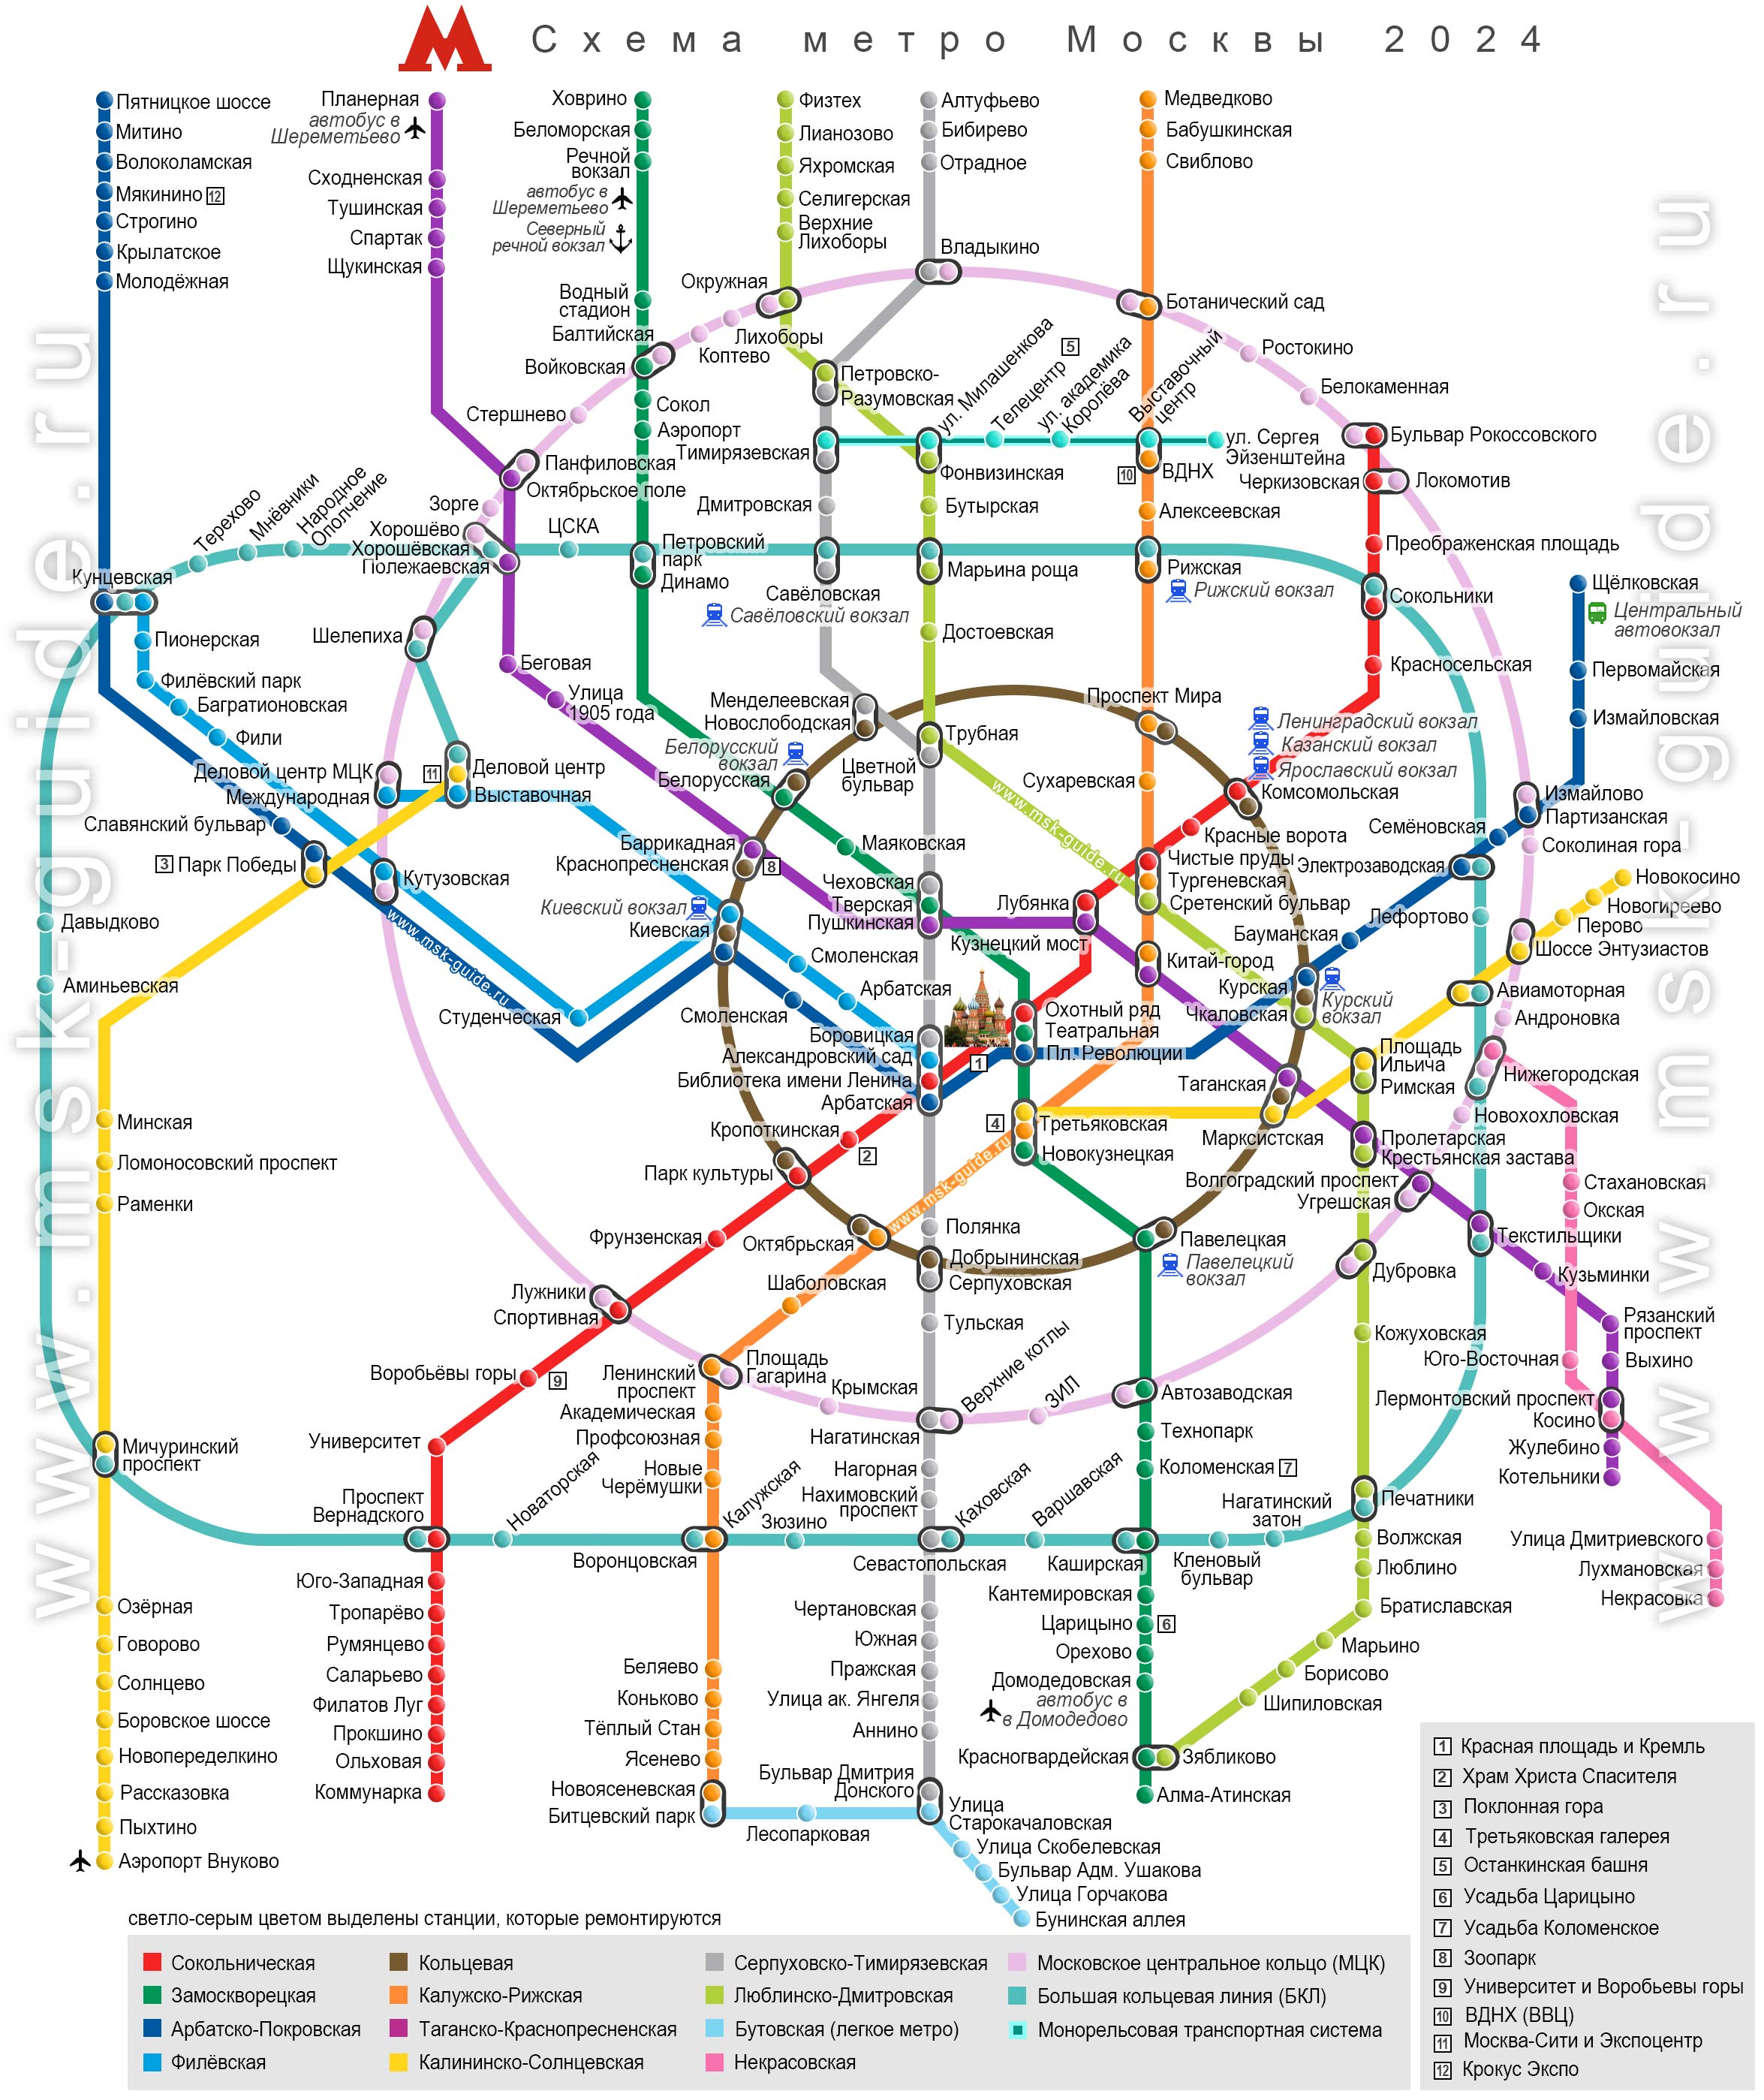 Интерактивная онлайн карта московского метро с новыми станциями